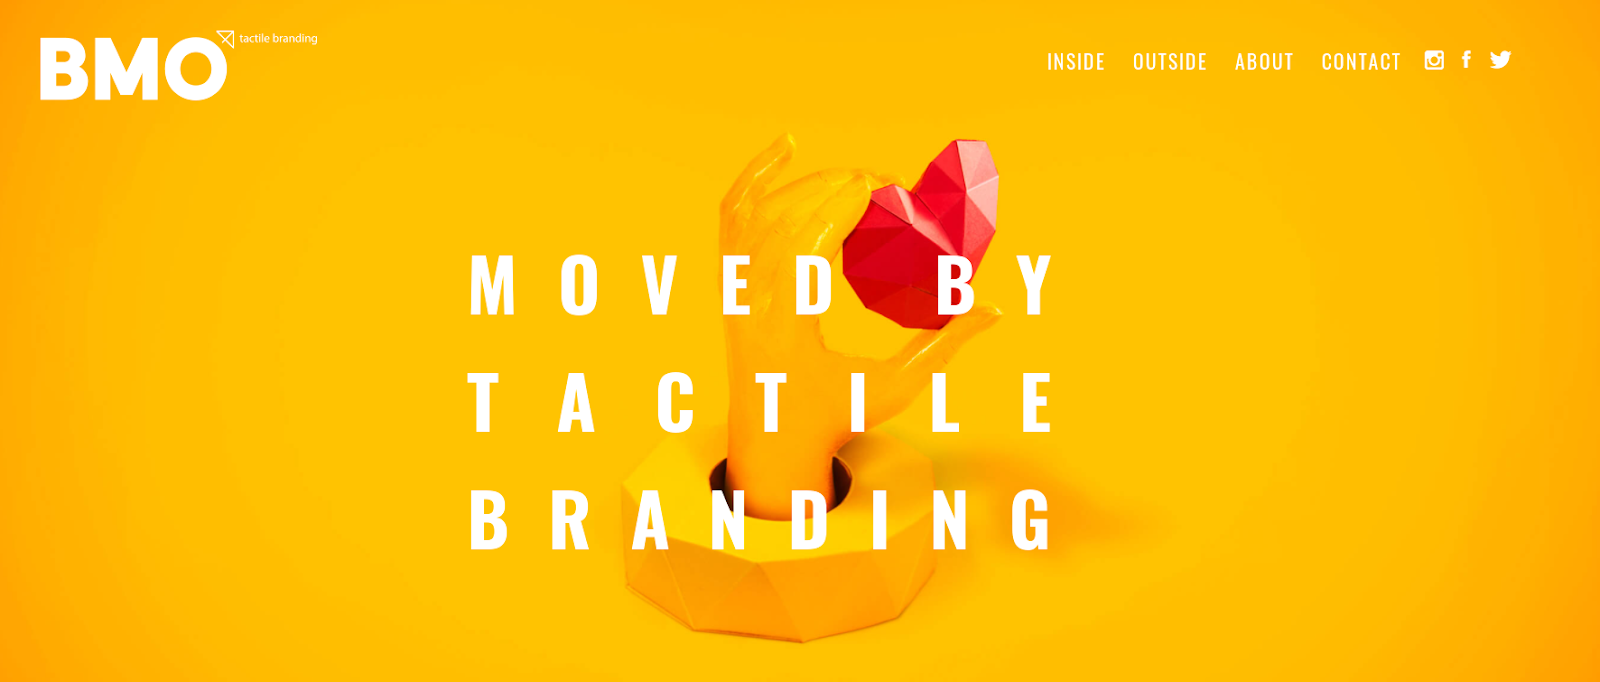 Agencia BMO Tactile Branding